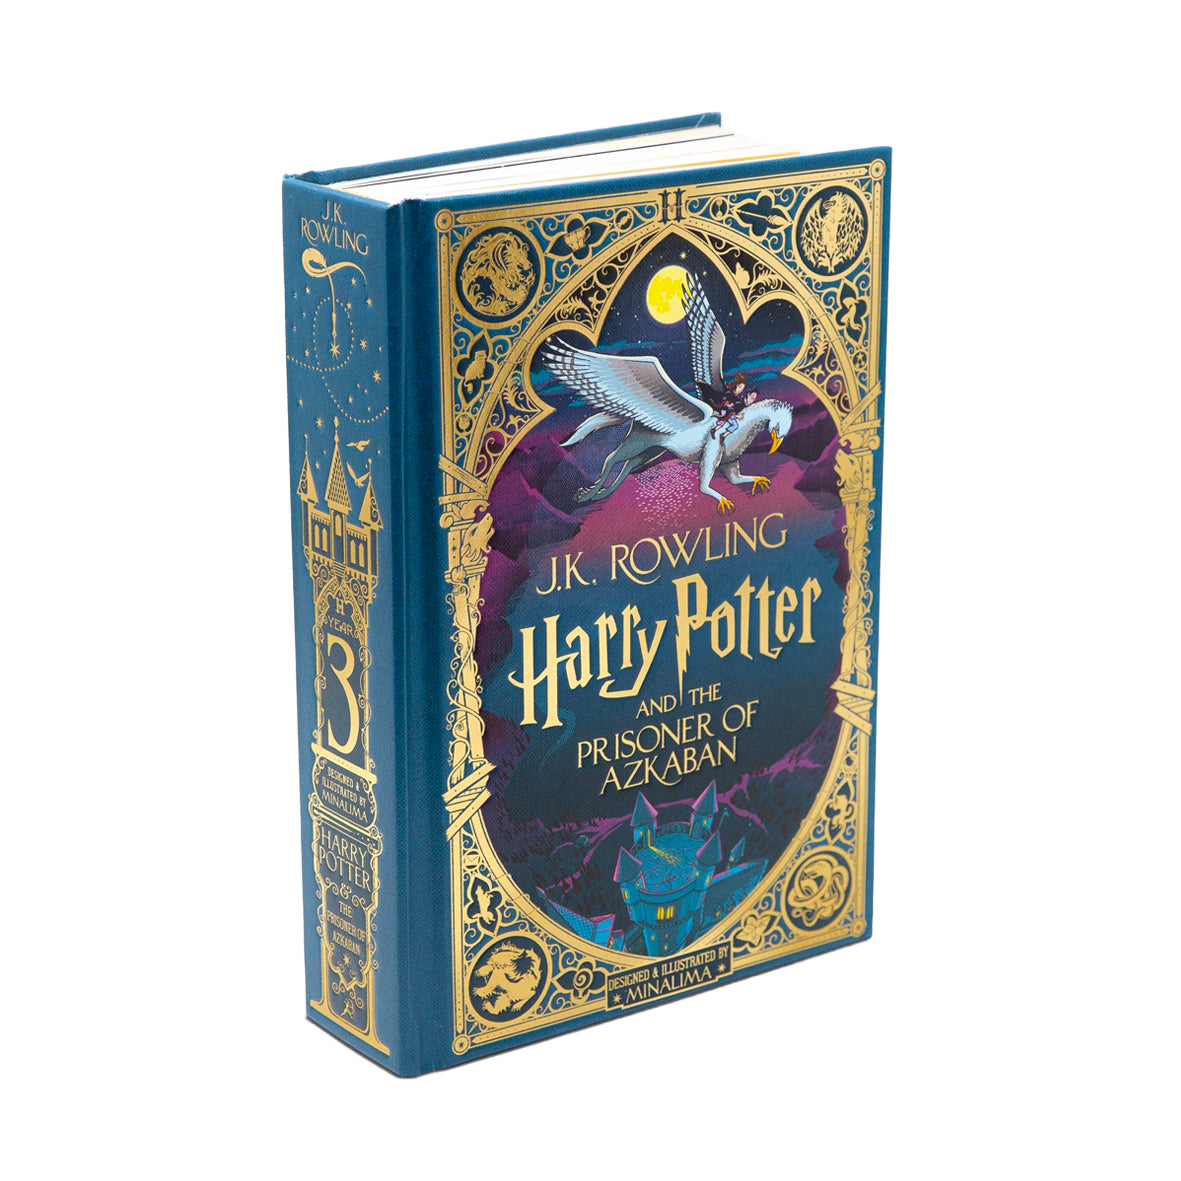 Harry Potter and the Prisoner of Azkaban - MinaLima Illustrated Edition